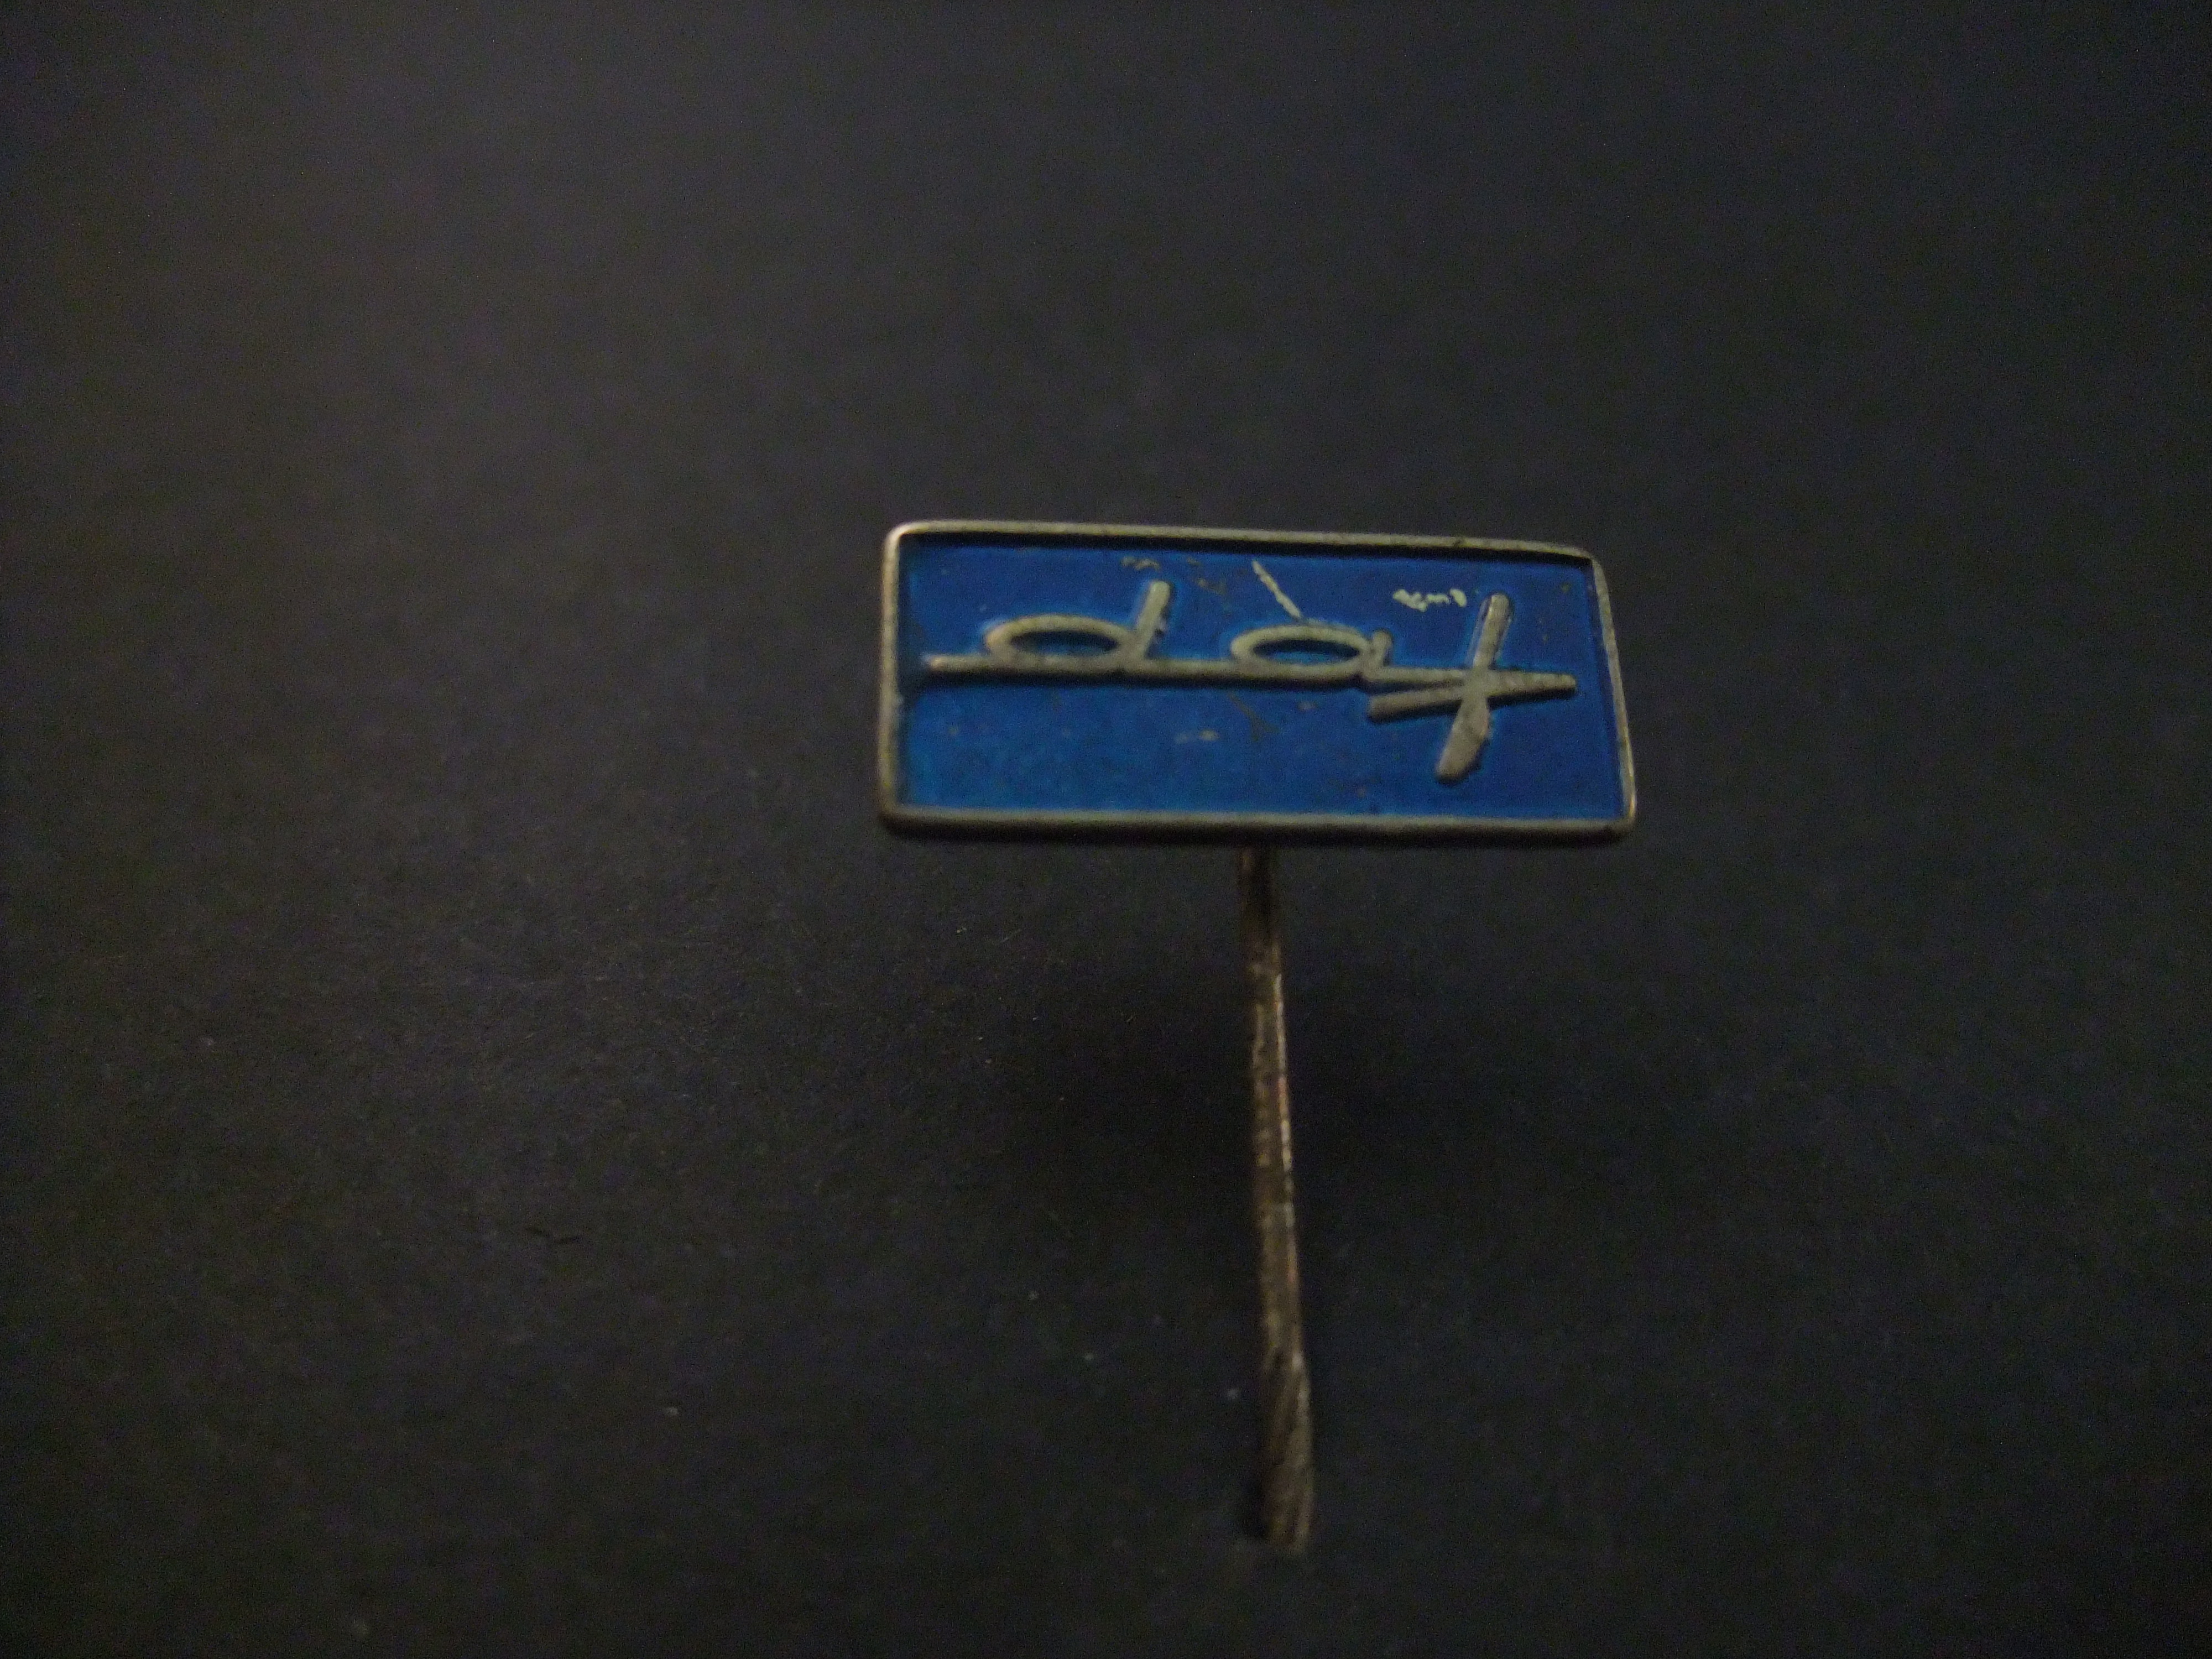 DAF (Van Doorne Automobiel Fabriek) logo blauw (langwerpig)